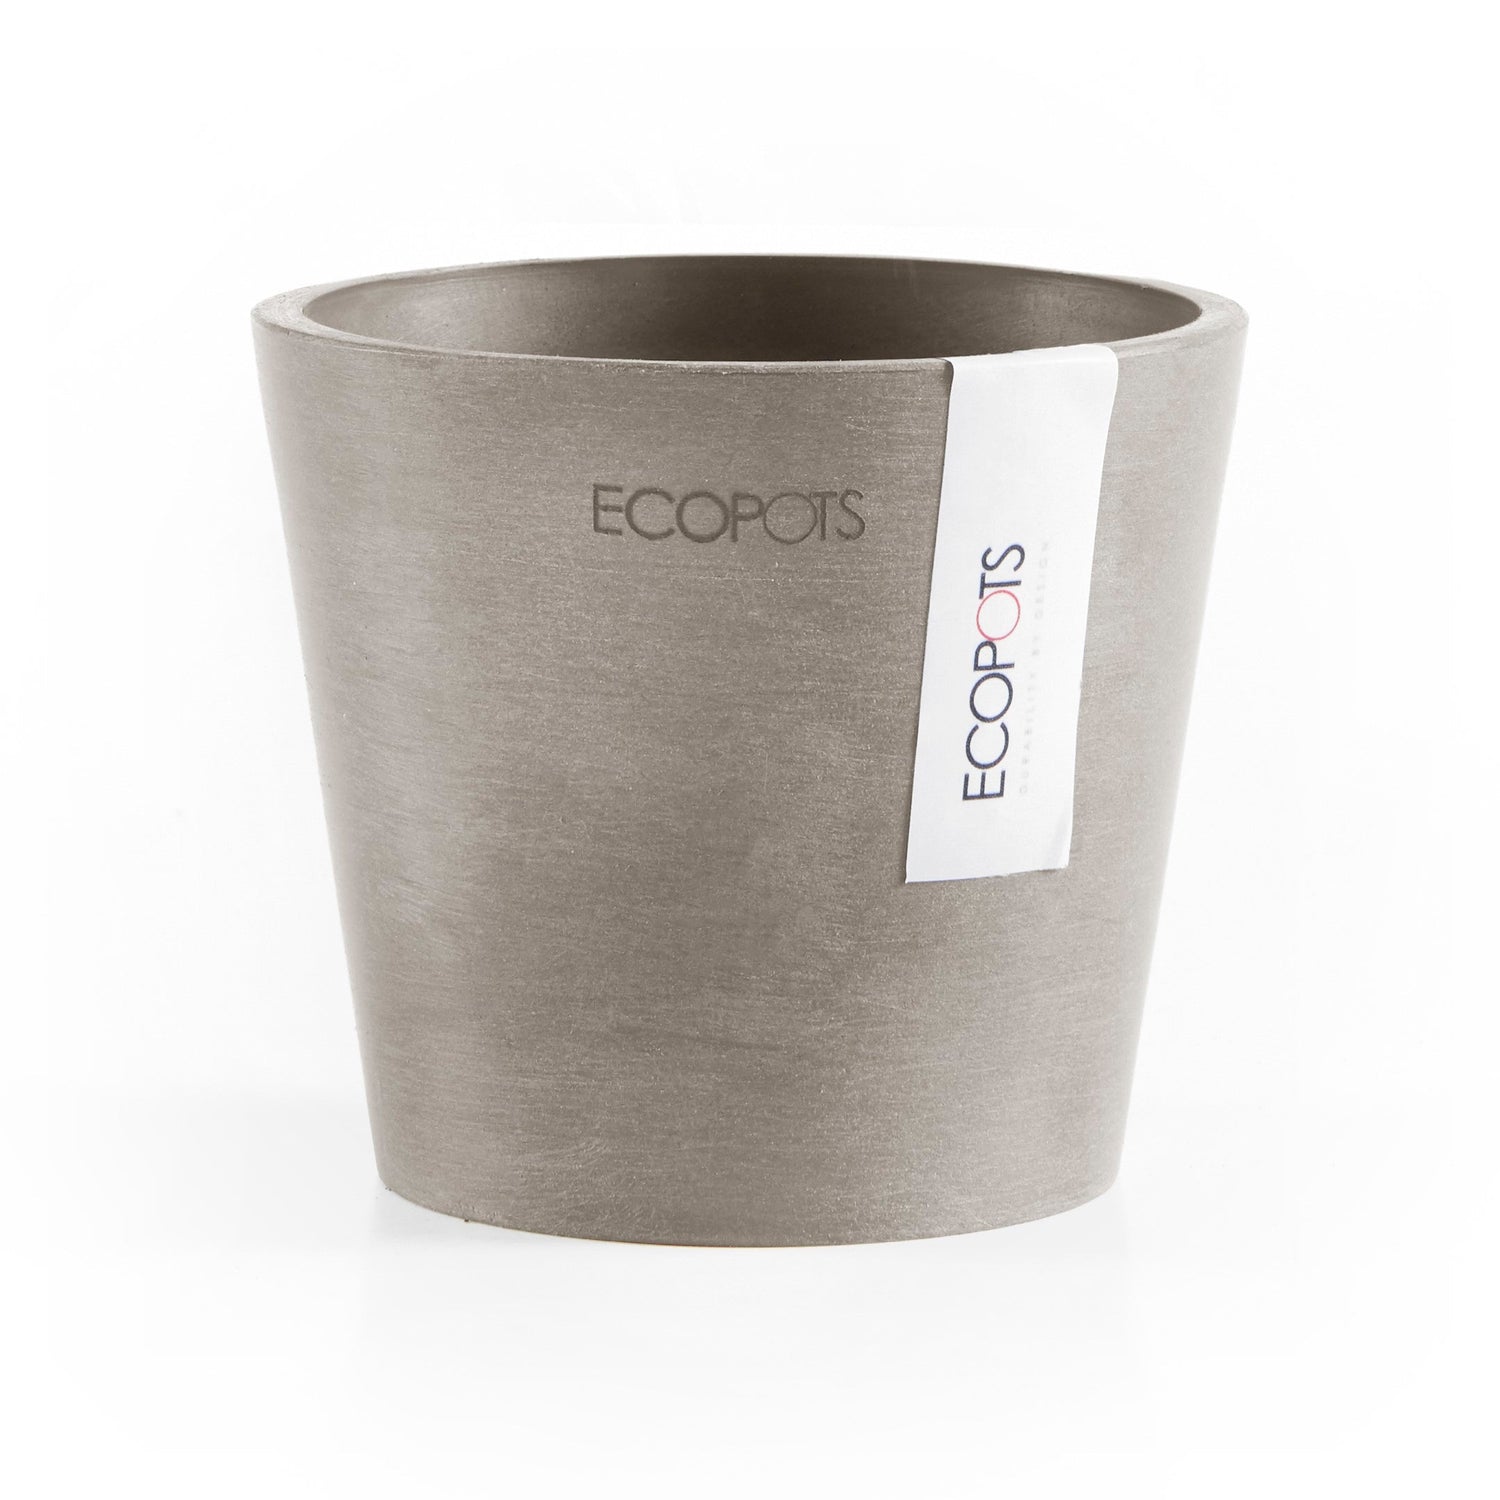 Kukkaruukku - Ecopots - Amsterdam 10,5cm taupe - Ecopotskauppa - Uuden aikakauden kukkaruukku